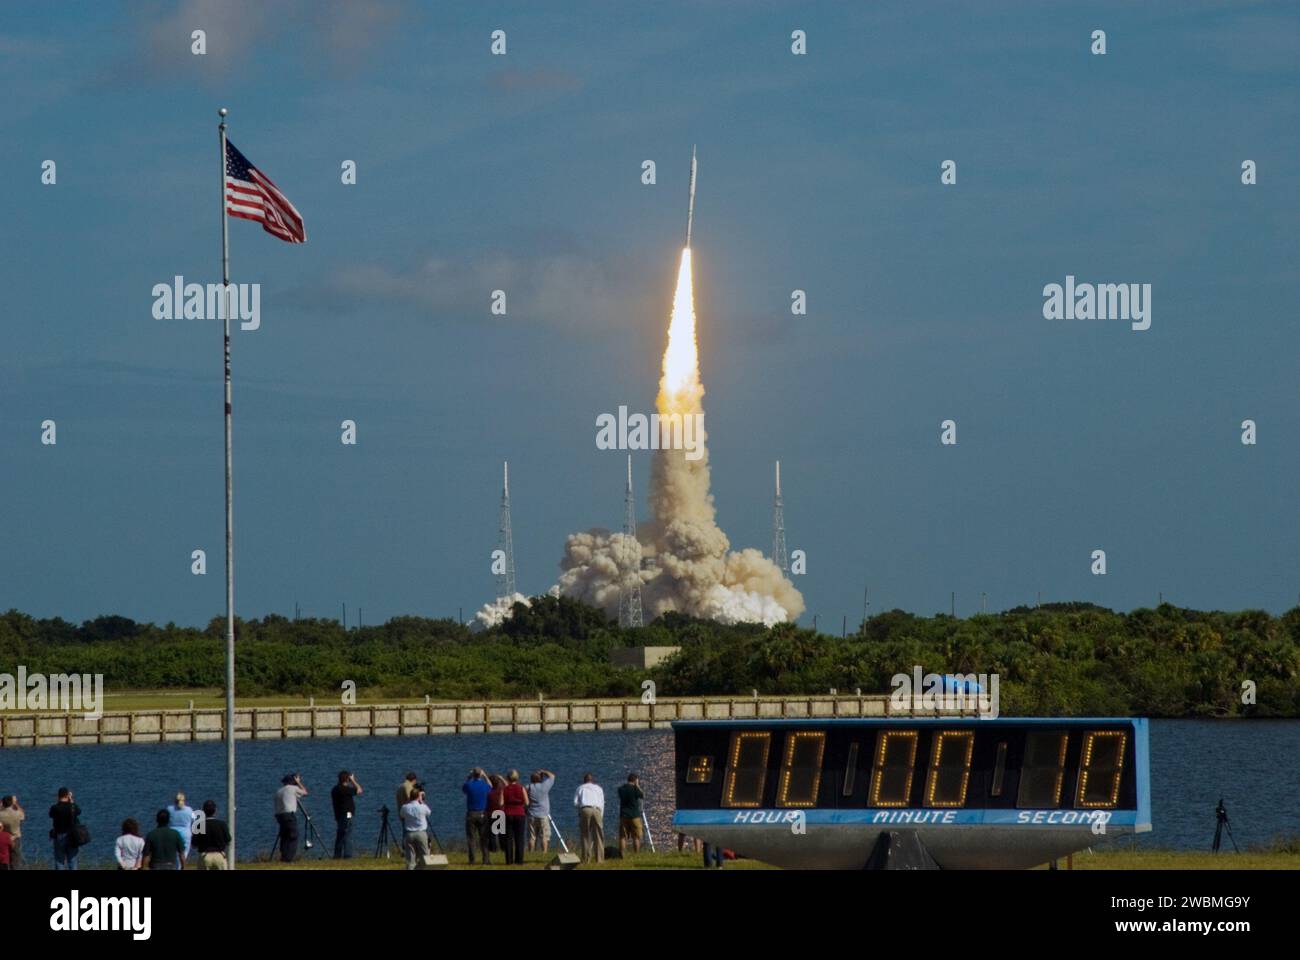 CAPE CANAVERAL, Ban. - Le stelle e le strisce della bandiera americana riflettono l'impegno della NASA nel lavoro di squadra mentre il razzo di prova Ares i-X del Constellation Program lancia il Launch Complex 39B al Kennedy Space Center della NASA in Florida. Il razzo produce 2,96 milioni di libbre di spinta al decollo e raggiunge una velocità di 100 mph in otto secondi. Il decollo del test di volo di 6 minuti è stato alle 11:30 EDT ottobre 28. Questo fu il primo lancio dalle piazzole di Kennedy di un veicolo diverso dallo Space Shuttle da quando i razzi Saturn del programma Apollo furono ritirati. Le parti utilizzate per far volare il booster Ares i-X Foto Stock